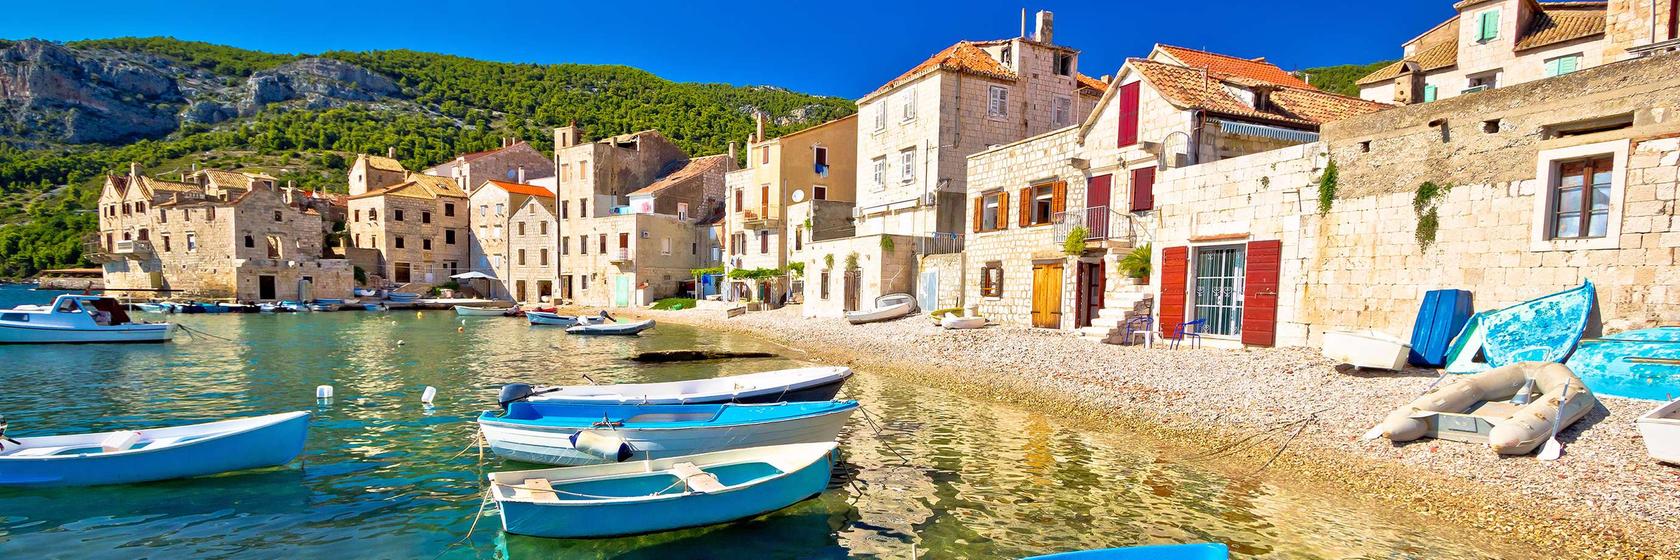 Tipy na výlety v Chorvatsku